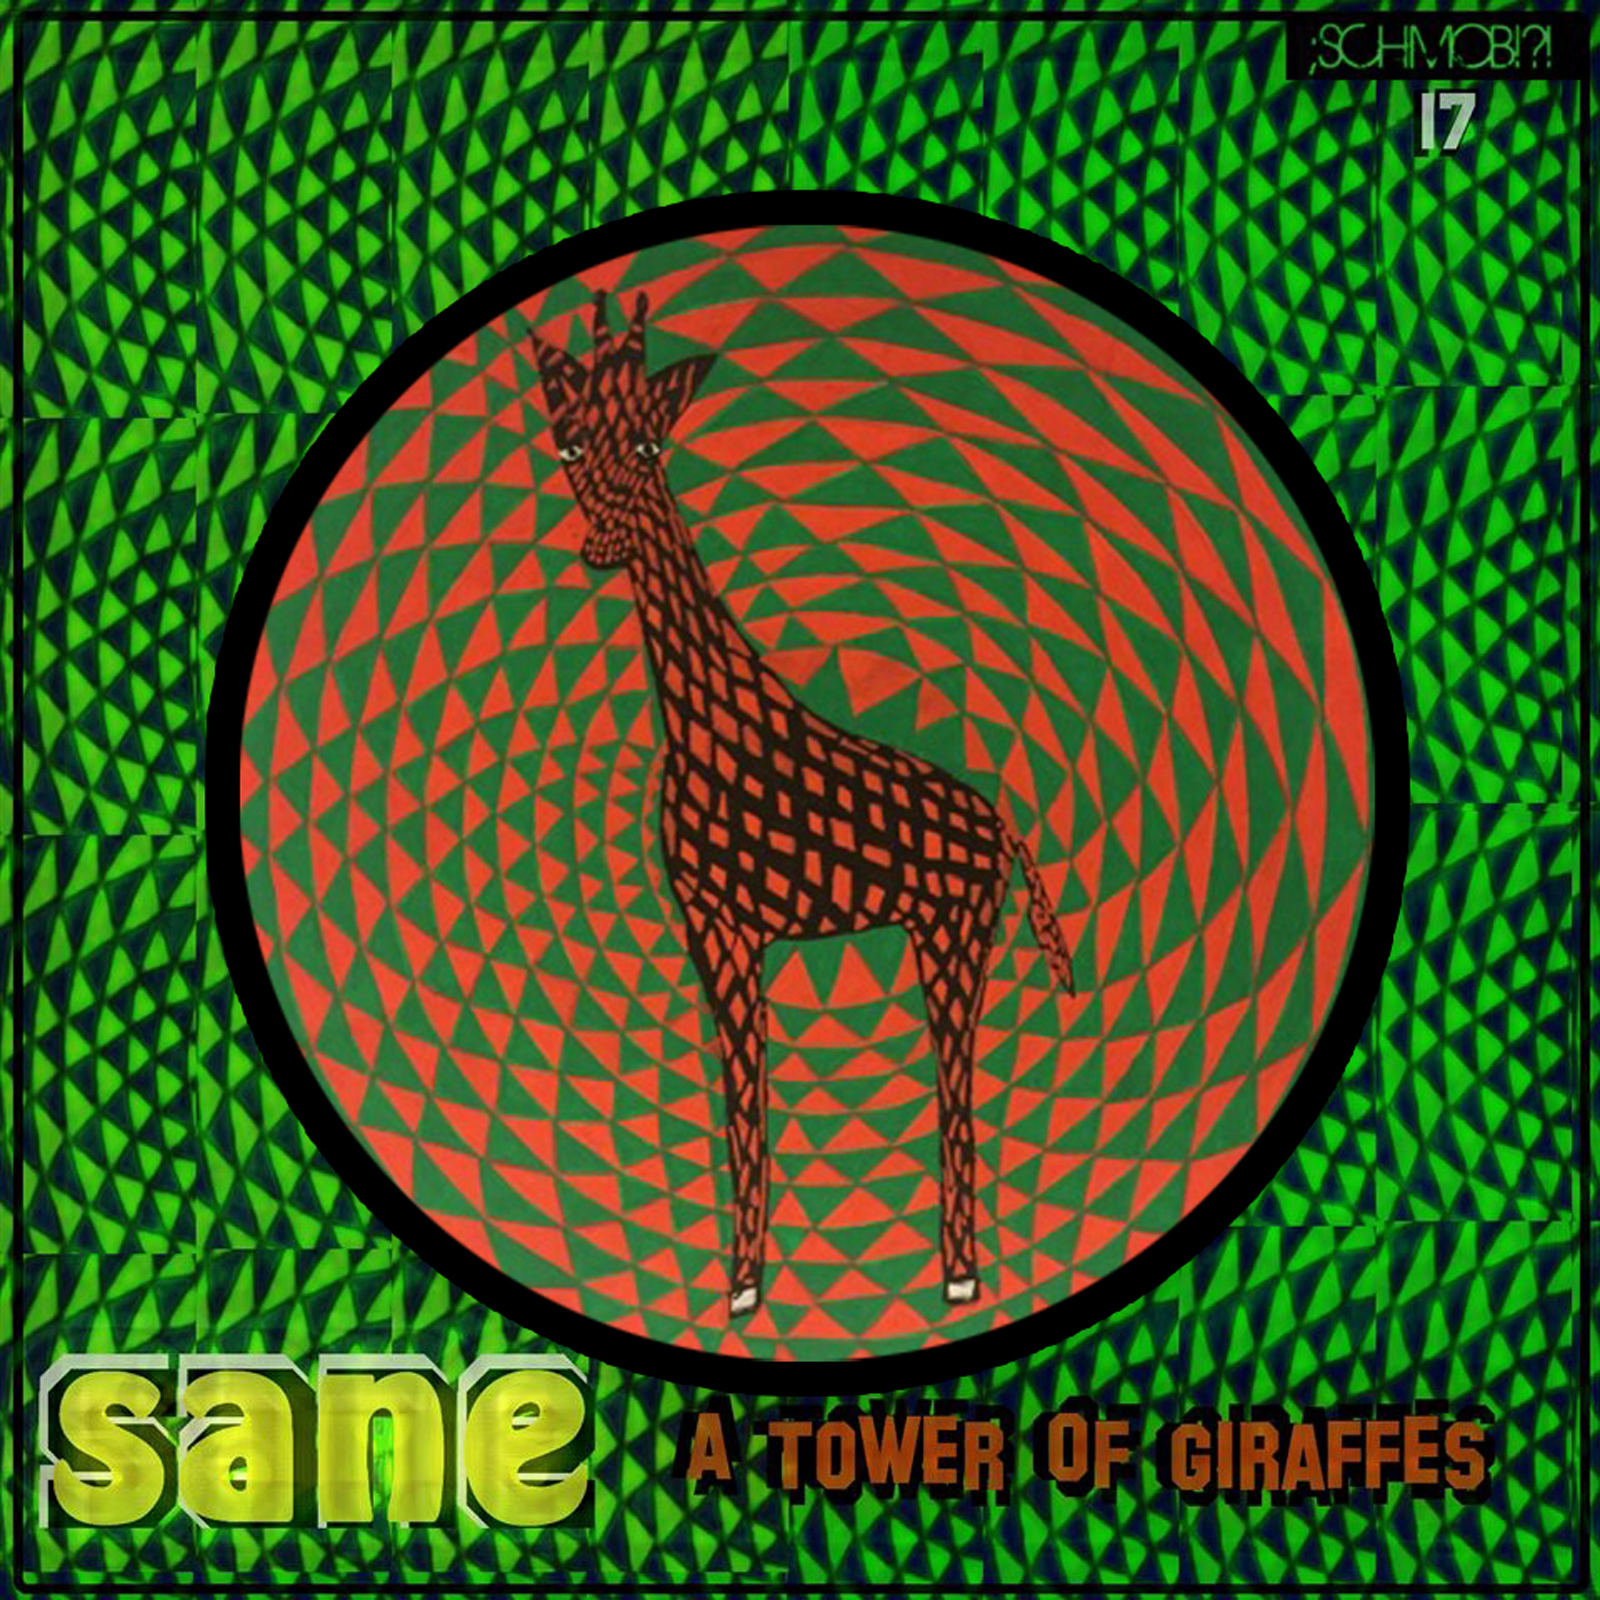 Sane – A tower of giraffes